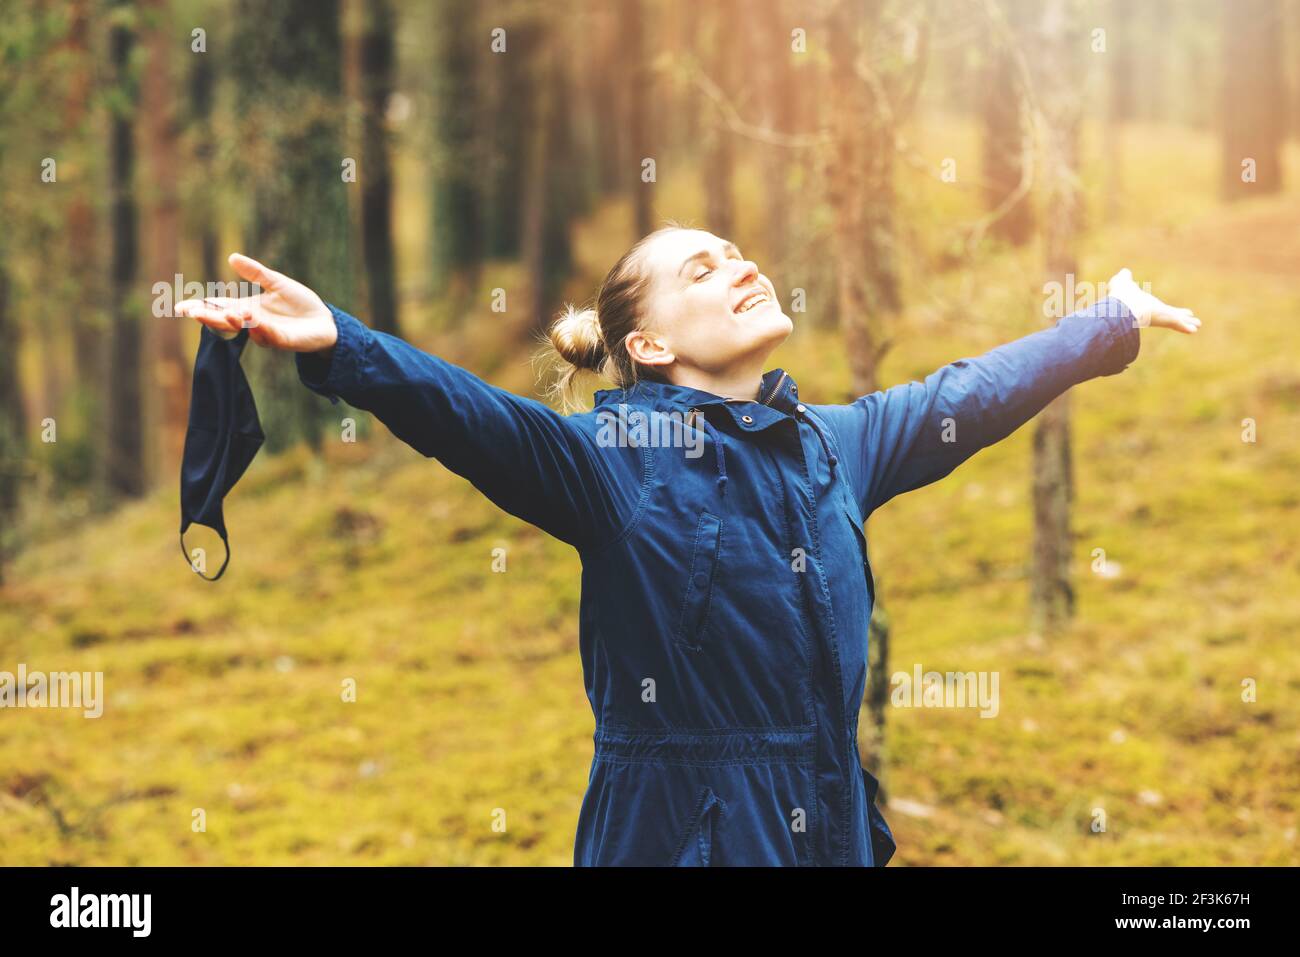 salud mental y alivio del estrés durante la pandemia de covid-19. mujer disfrutando de la naturaleza y el aire fresco con máscara facial removida en el bosque Foto de stock